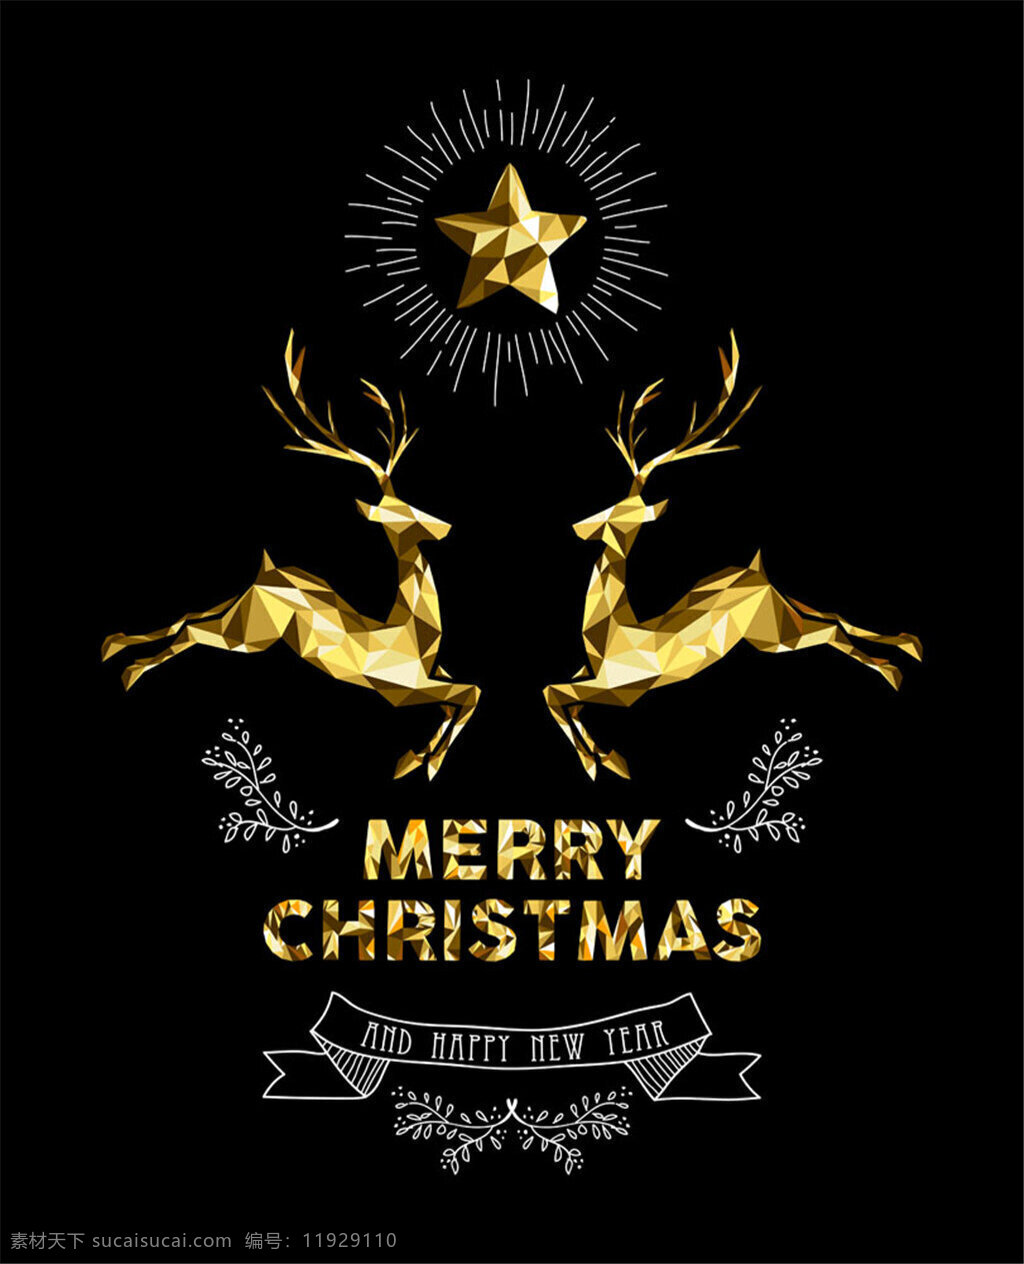 金色 麋鹿 圣诞 背景 欧式 圣诞节 标签 矢量 模板下载 圣诞节标签 圣诞树 圣诞节元素